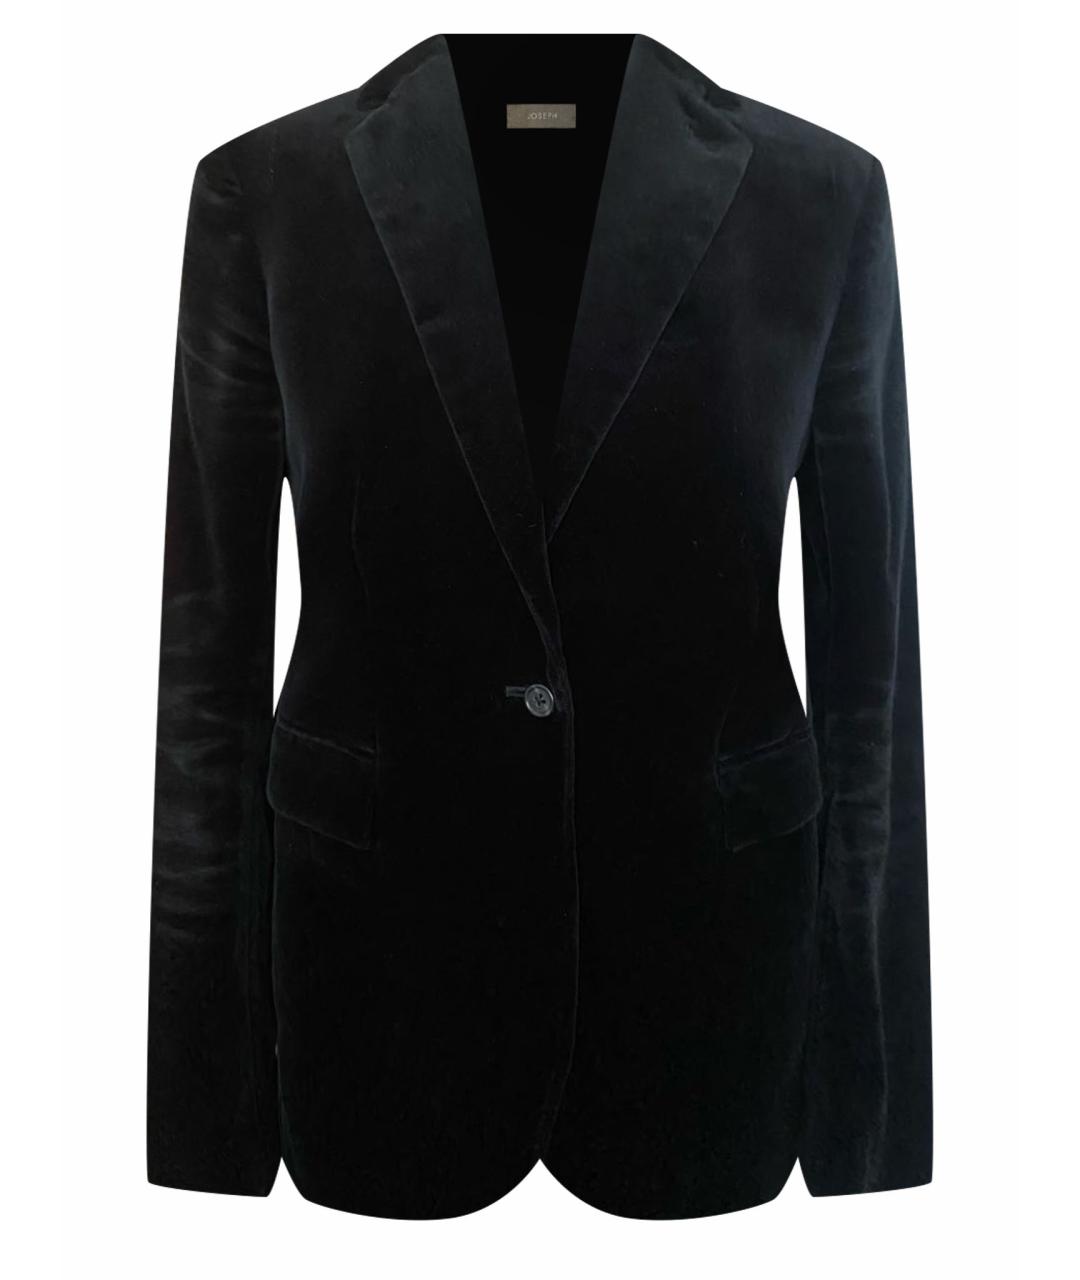 JOSEPH Черный бархатный жакет/пиджак, фото 1